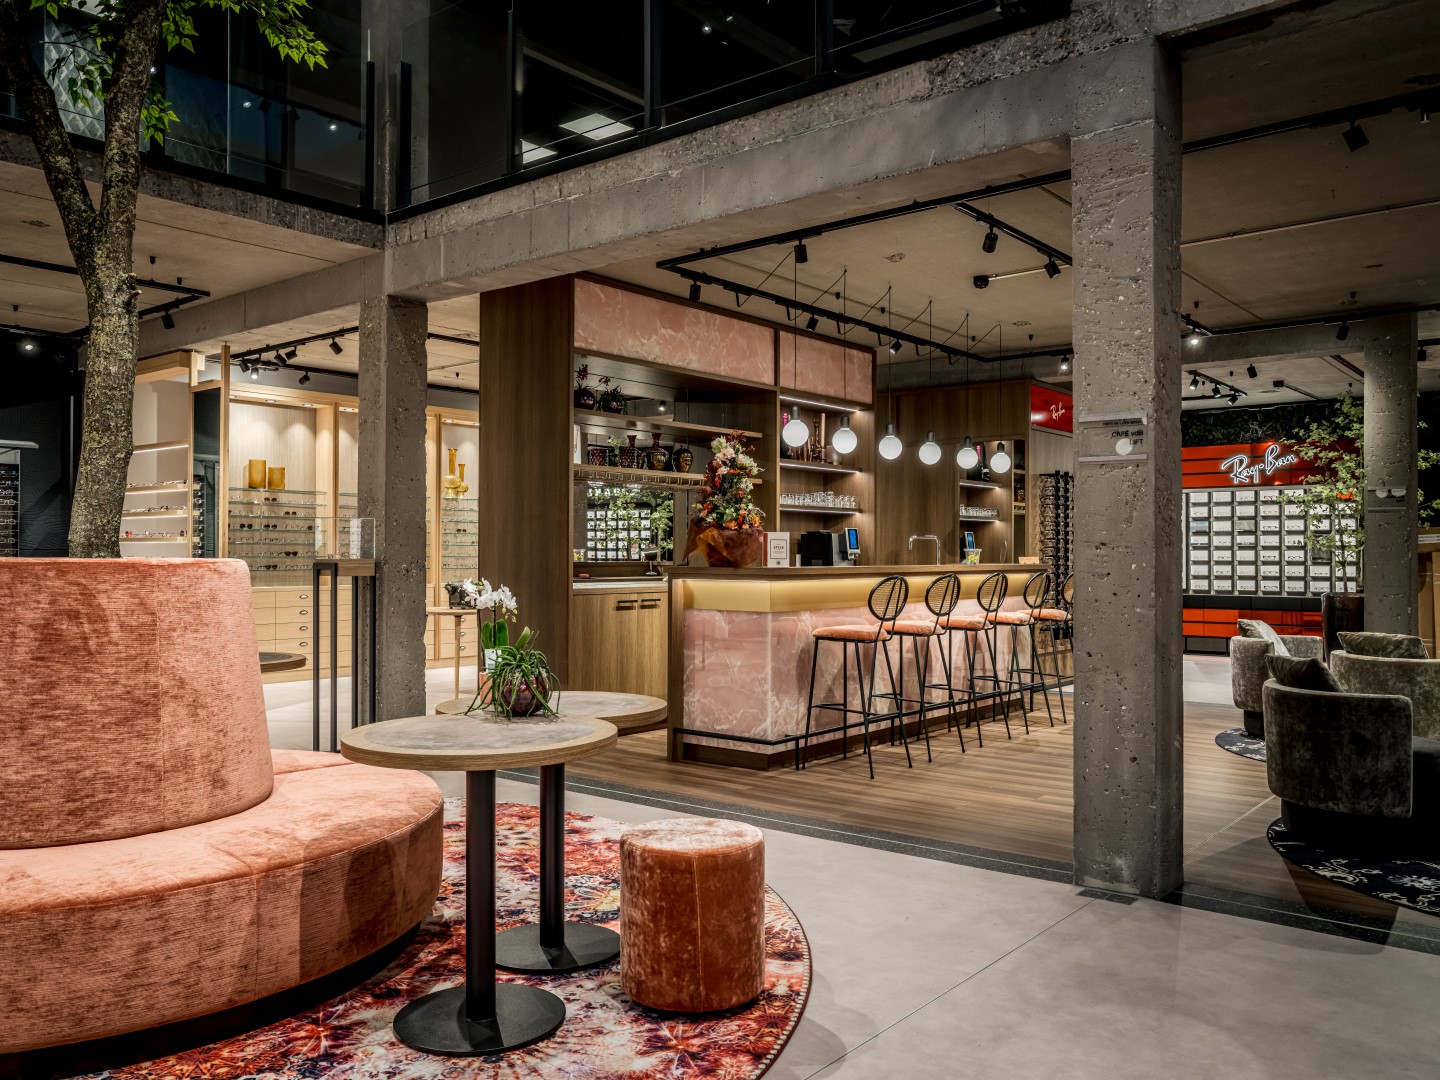 Design reception area with bar in Belgium 